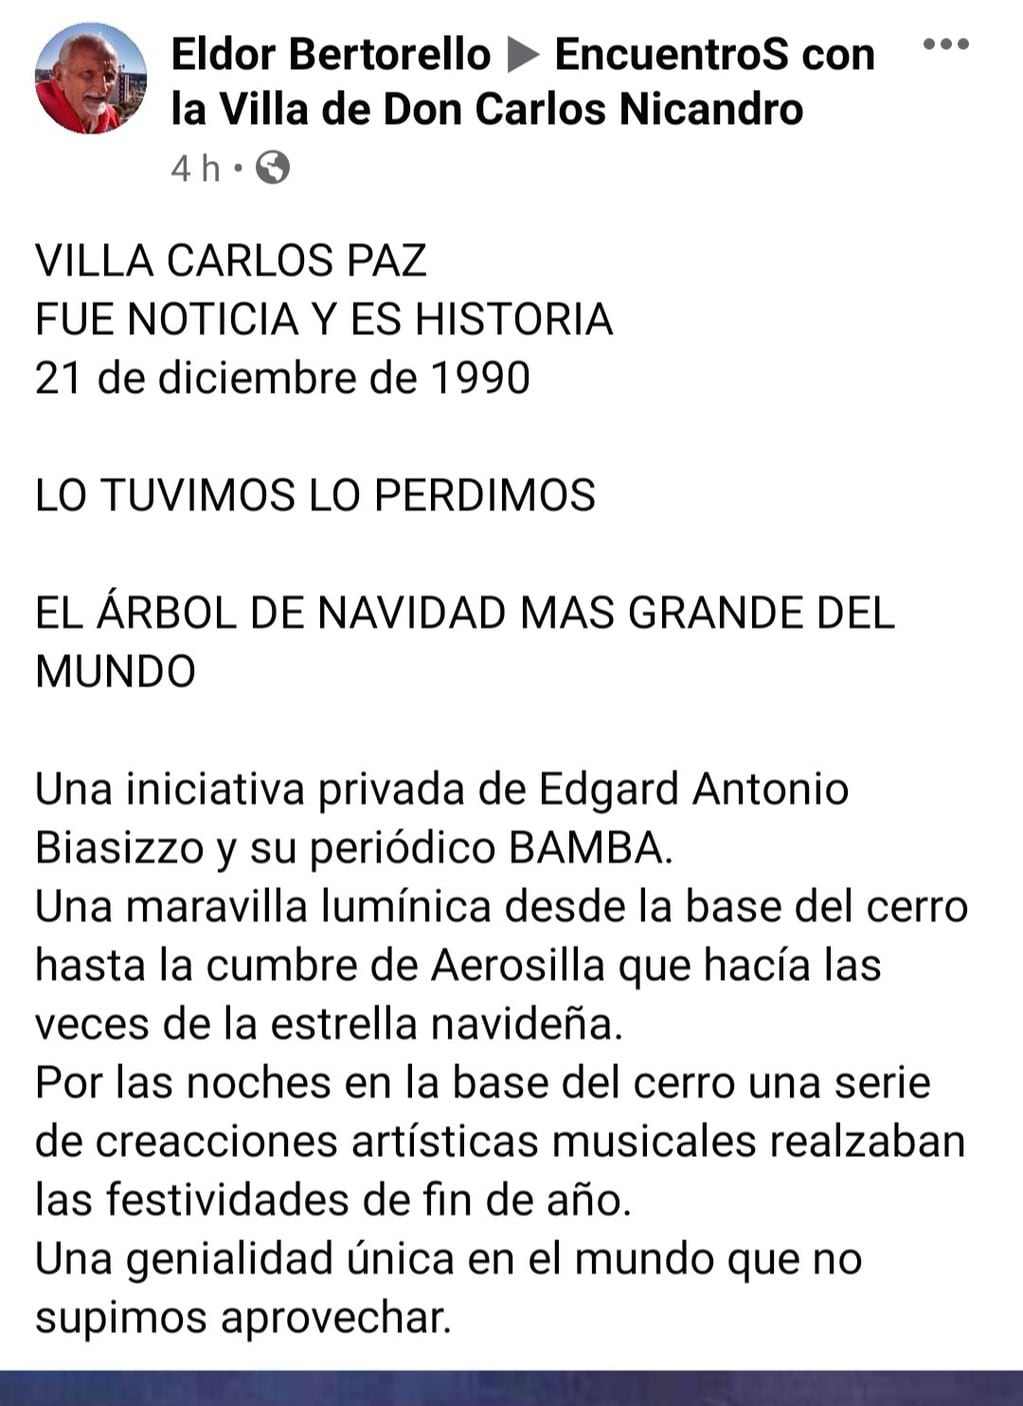 Publicación de Eldor Bertorello en "Encuentros con la Villa de Don Carlos Nicandro".